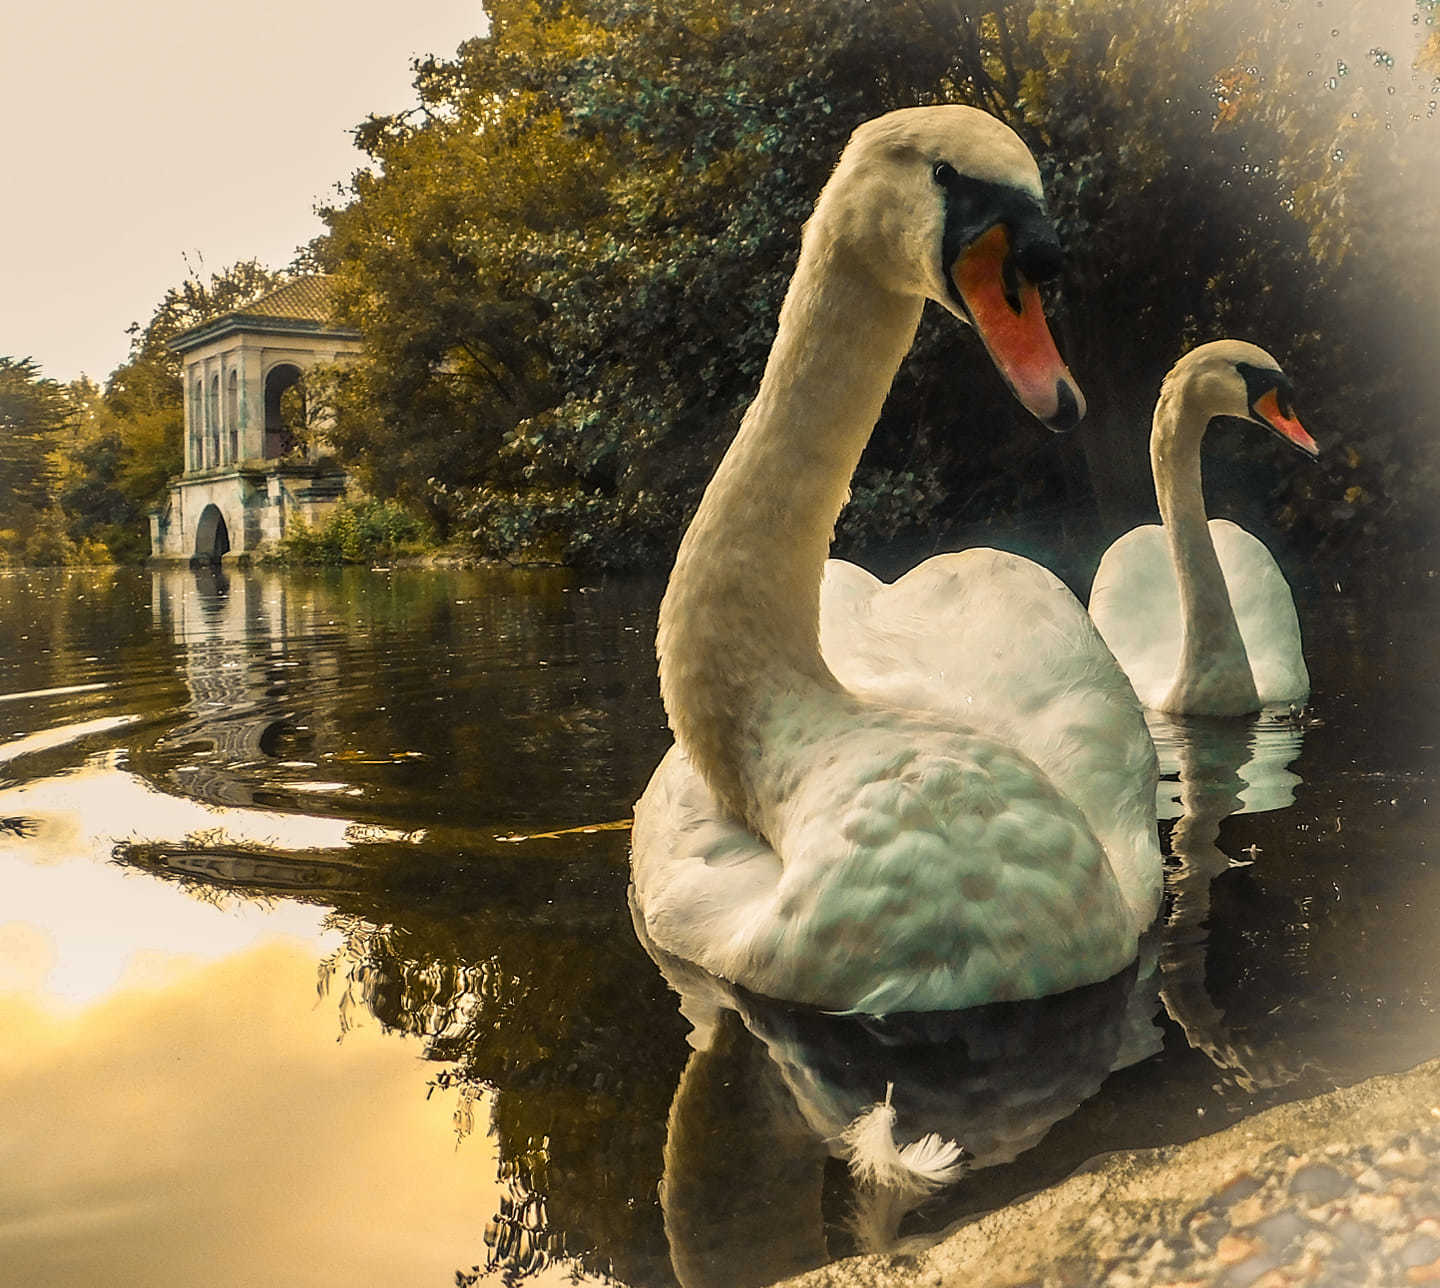 Swan lake in Birkenhead Park by Nicola Jayne